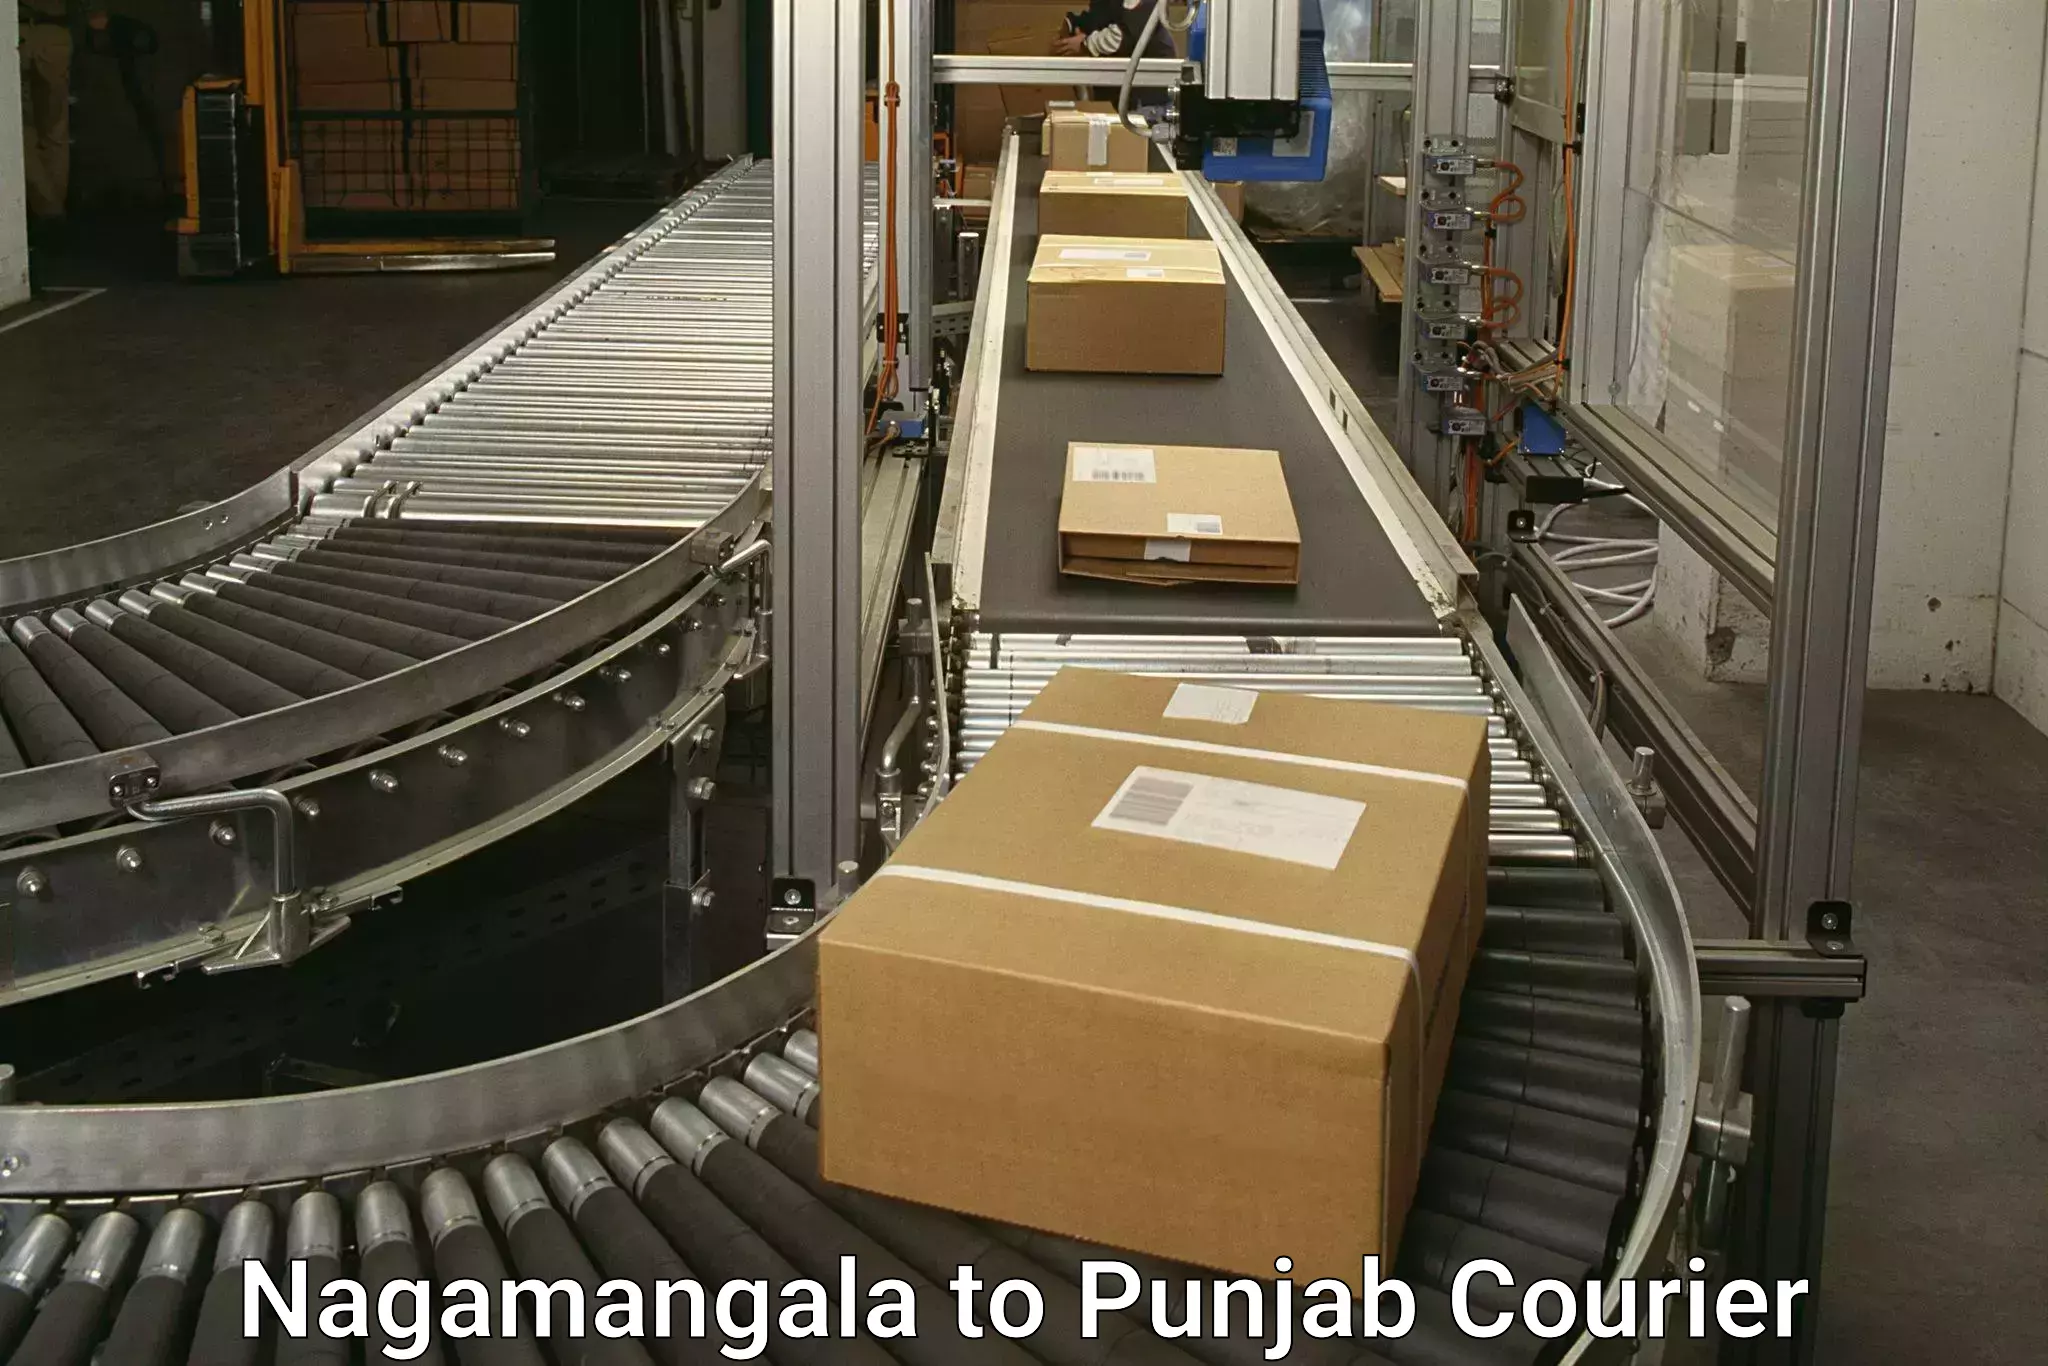 Nationwide courier service Nagamangala to Central University of Punjab Bathinda